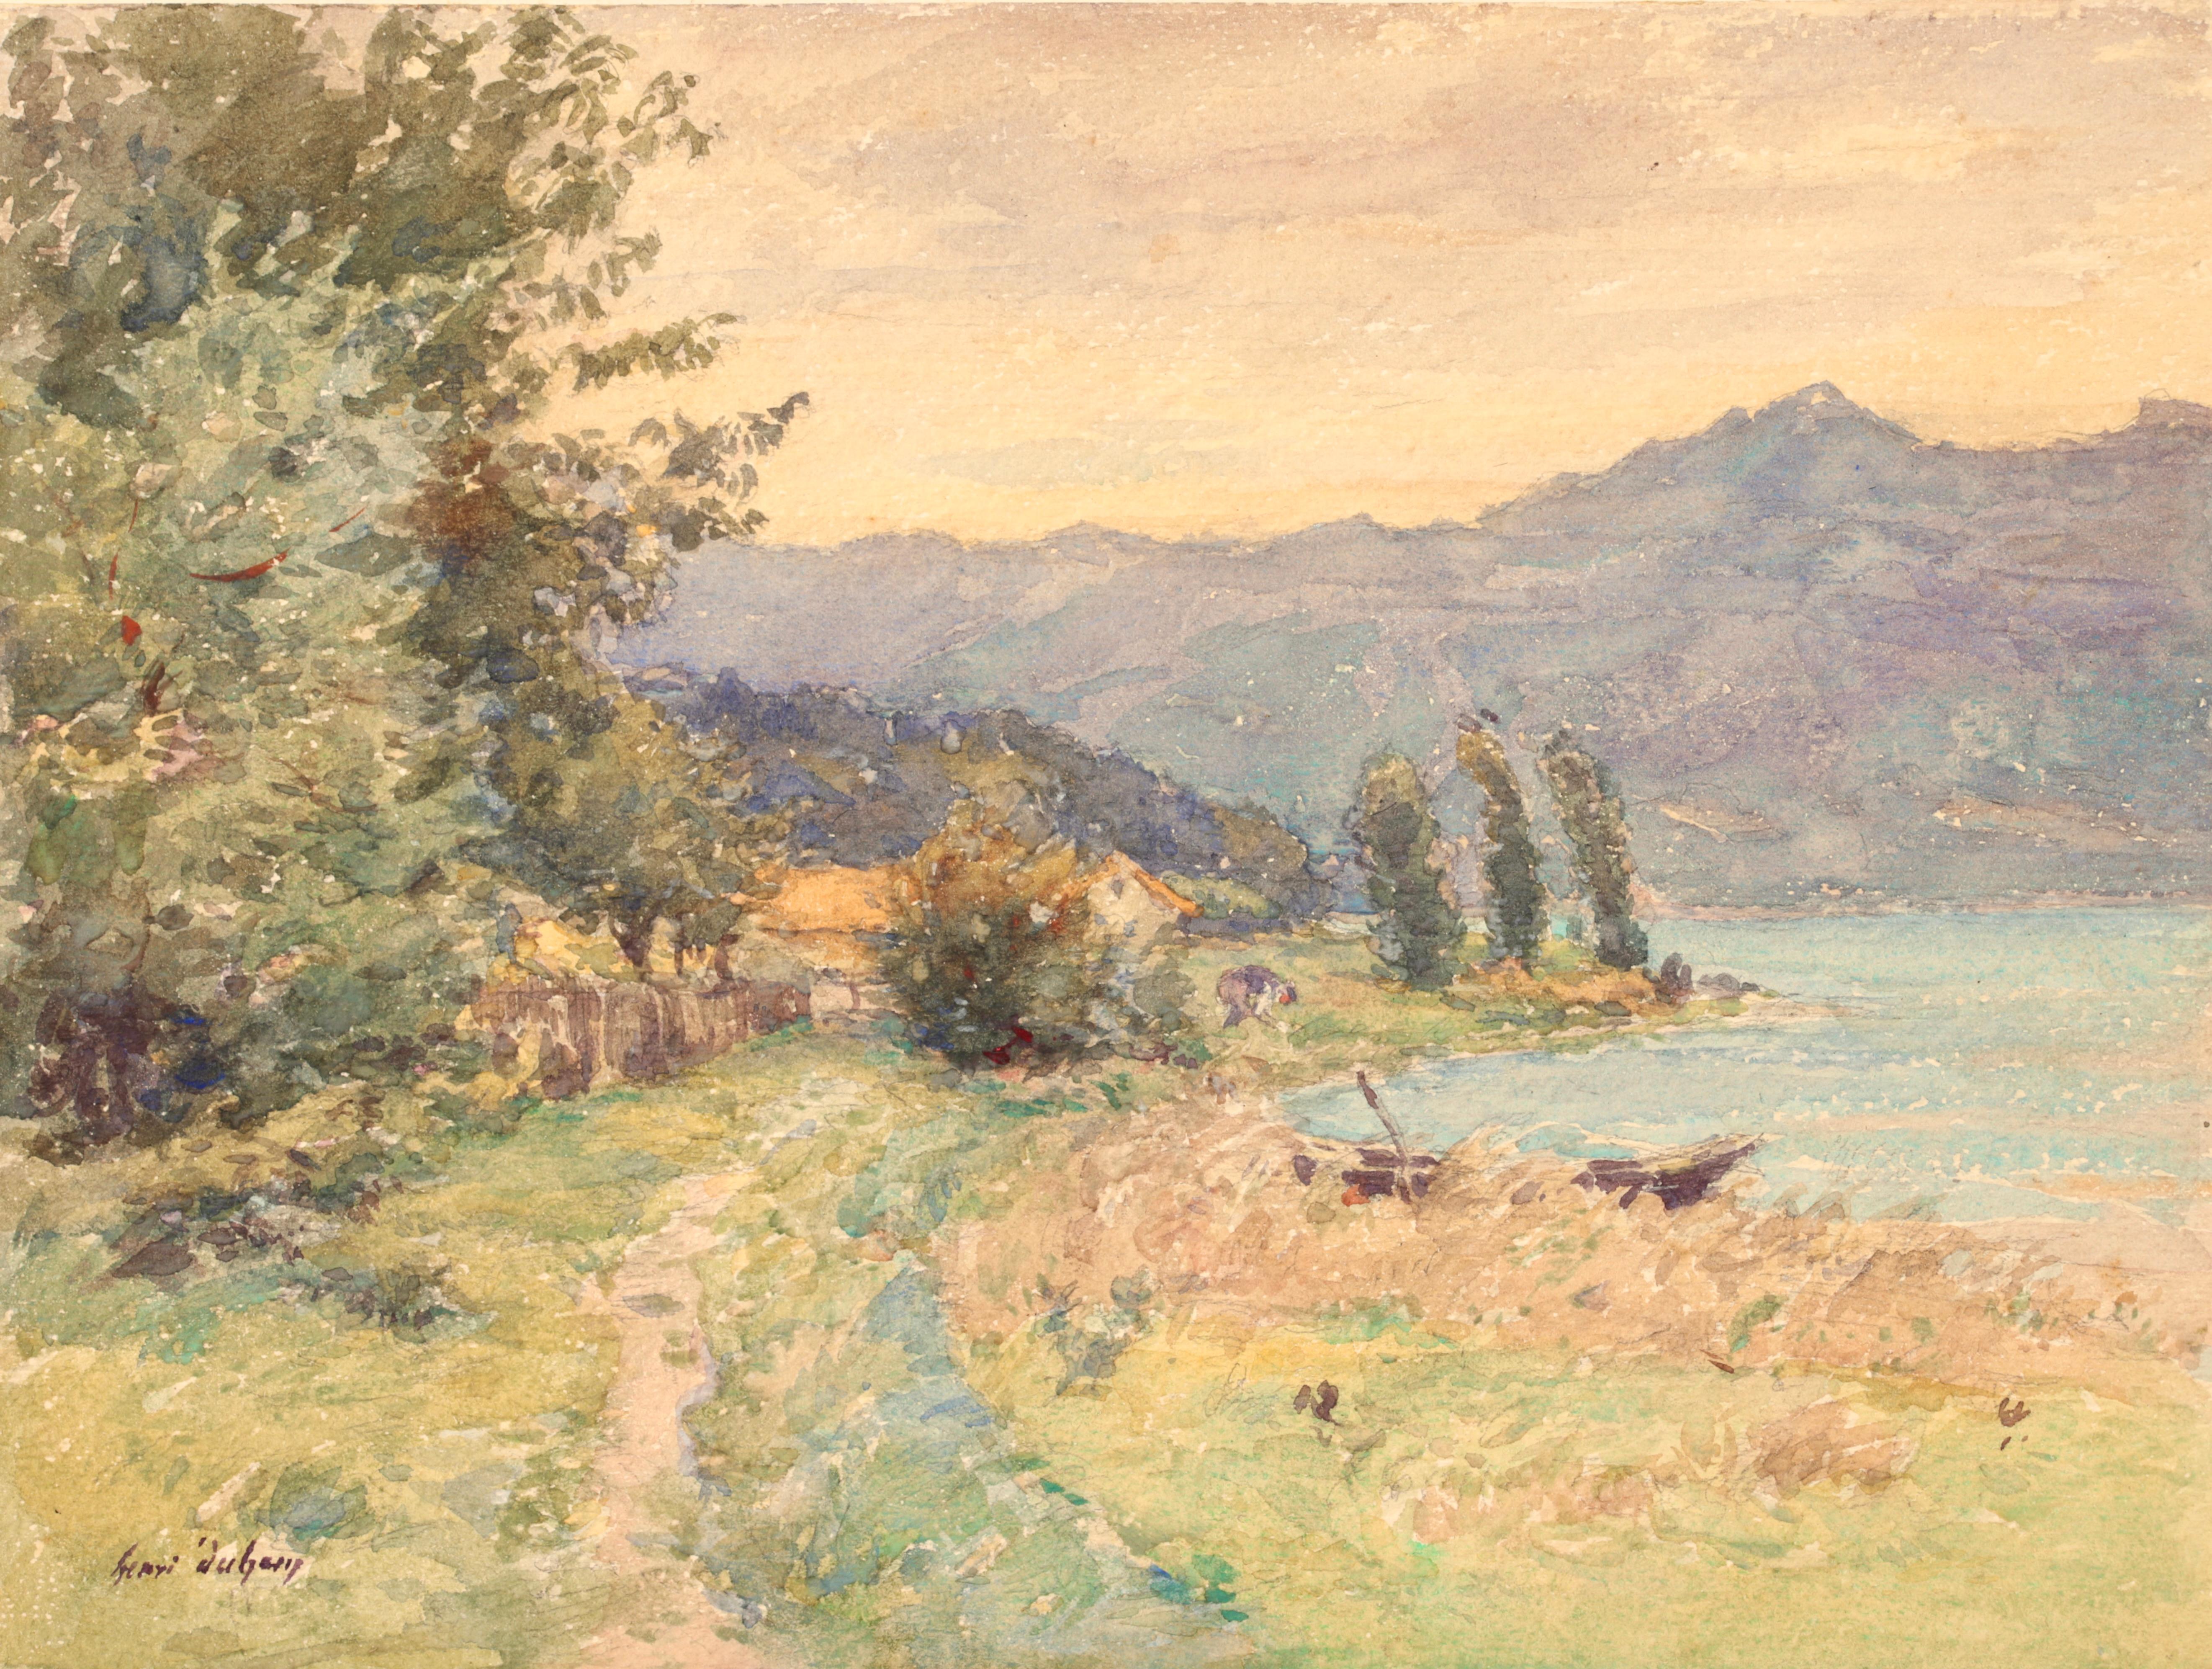 Signierte impressionistische Figur in Landschaft Aquarell auf Papier um 1920 von Henri Duhem. Dieses schöne Werk zeigt den Blick auf einen See mit grünen Bäumen am Ufer und blauen Bergen dahinter. In der Mitte des Bildes steht ein Mann neben einem